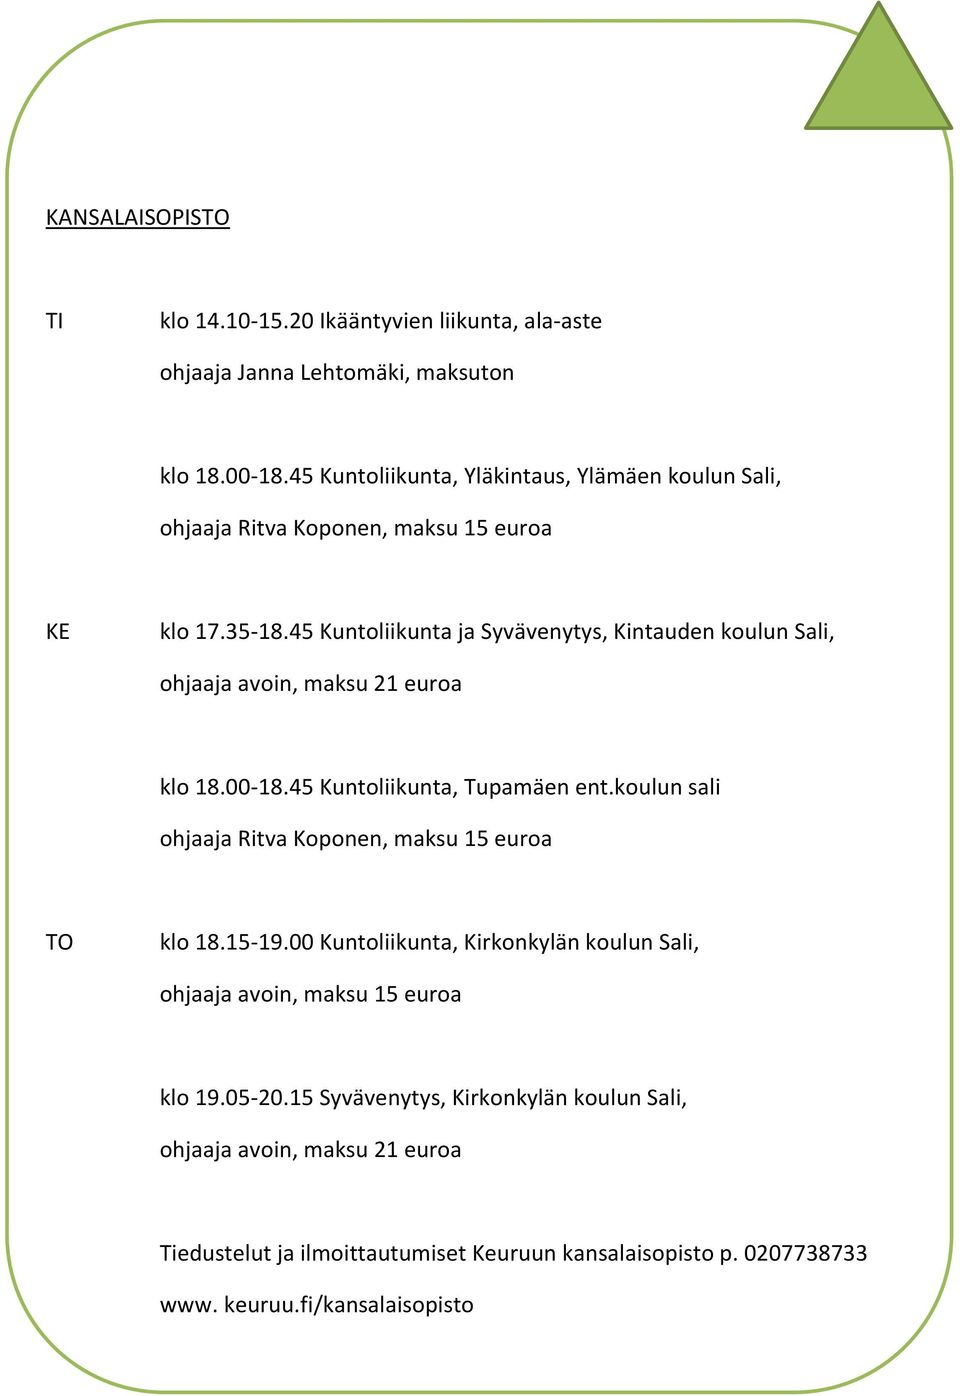 45 Kuntoliikunta ja Syvävenytys, Kintauden koulun Sali, ohjaaja avoin, maksu 21 euroa klo 18.00-18.45 Kuntoliikunta, Tupamäen ent.